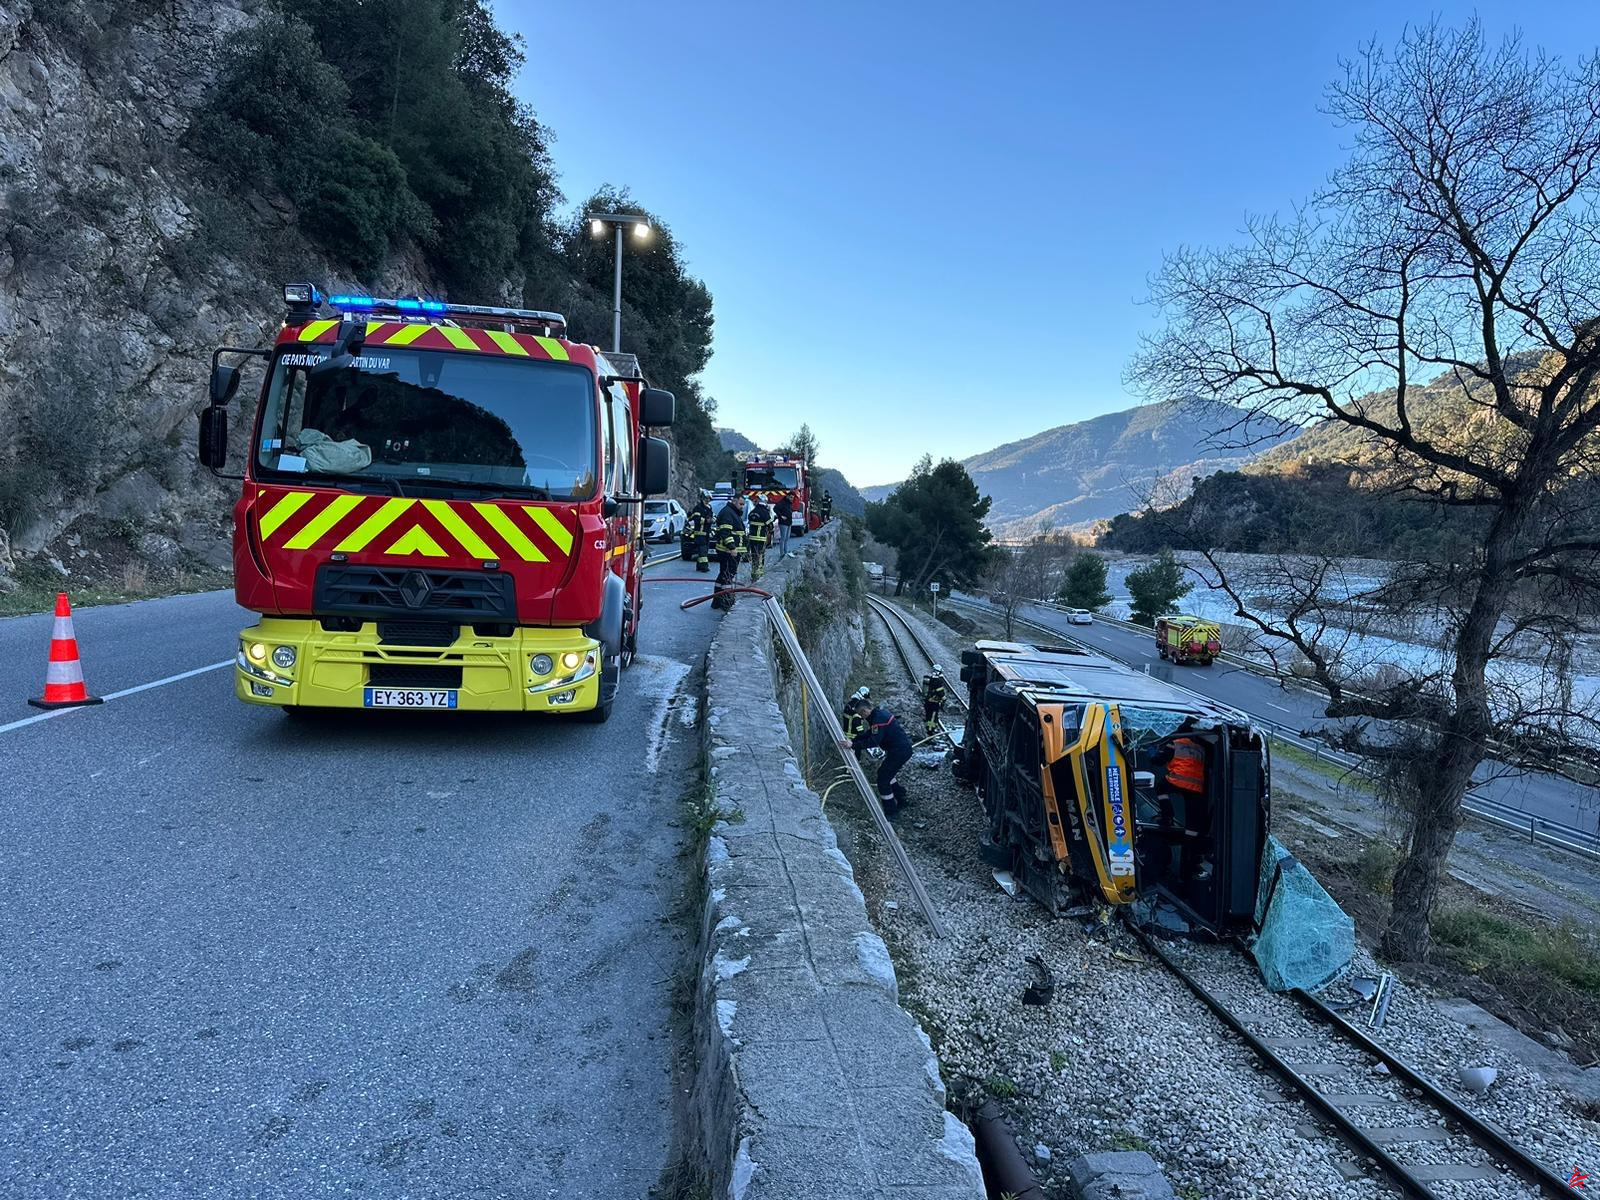 Caída de un autobús cerca de Niza: positivo por estupefacientes, el conductor acusado y puesto bajo supervisión judicial